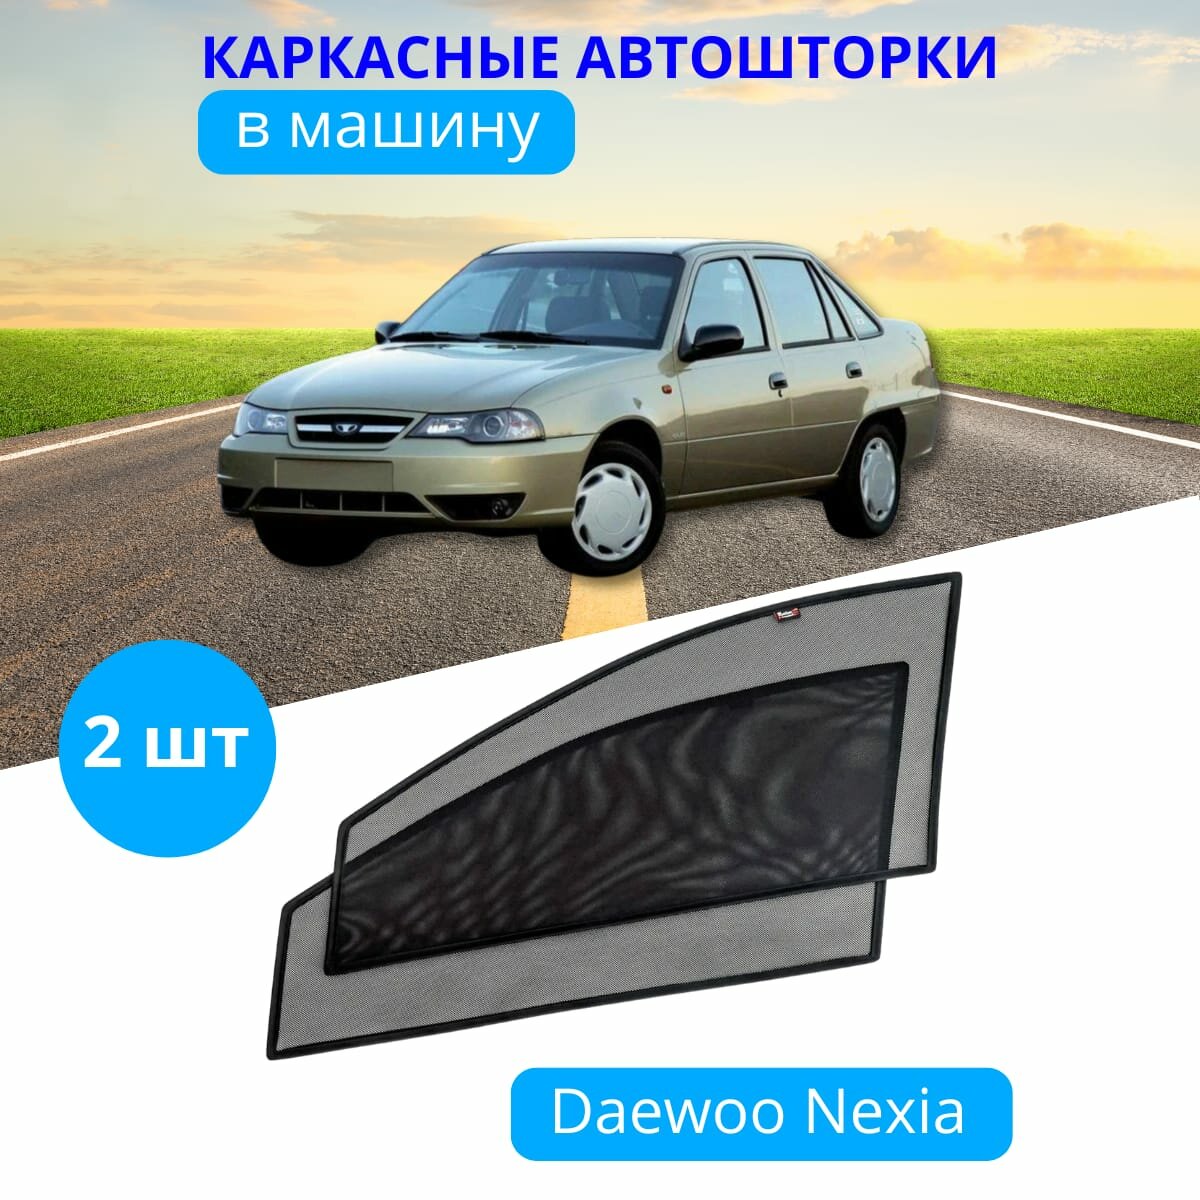 Автошторки каркасные на DAEWOO Nexia, на передние двери на приклеиваемых магнитах, с затемнением 80-85% от автоателье "Тачкин Гардероб".